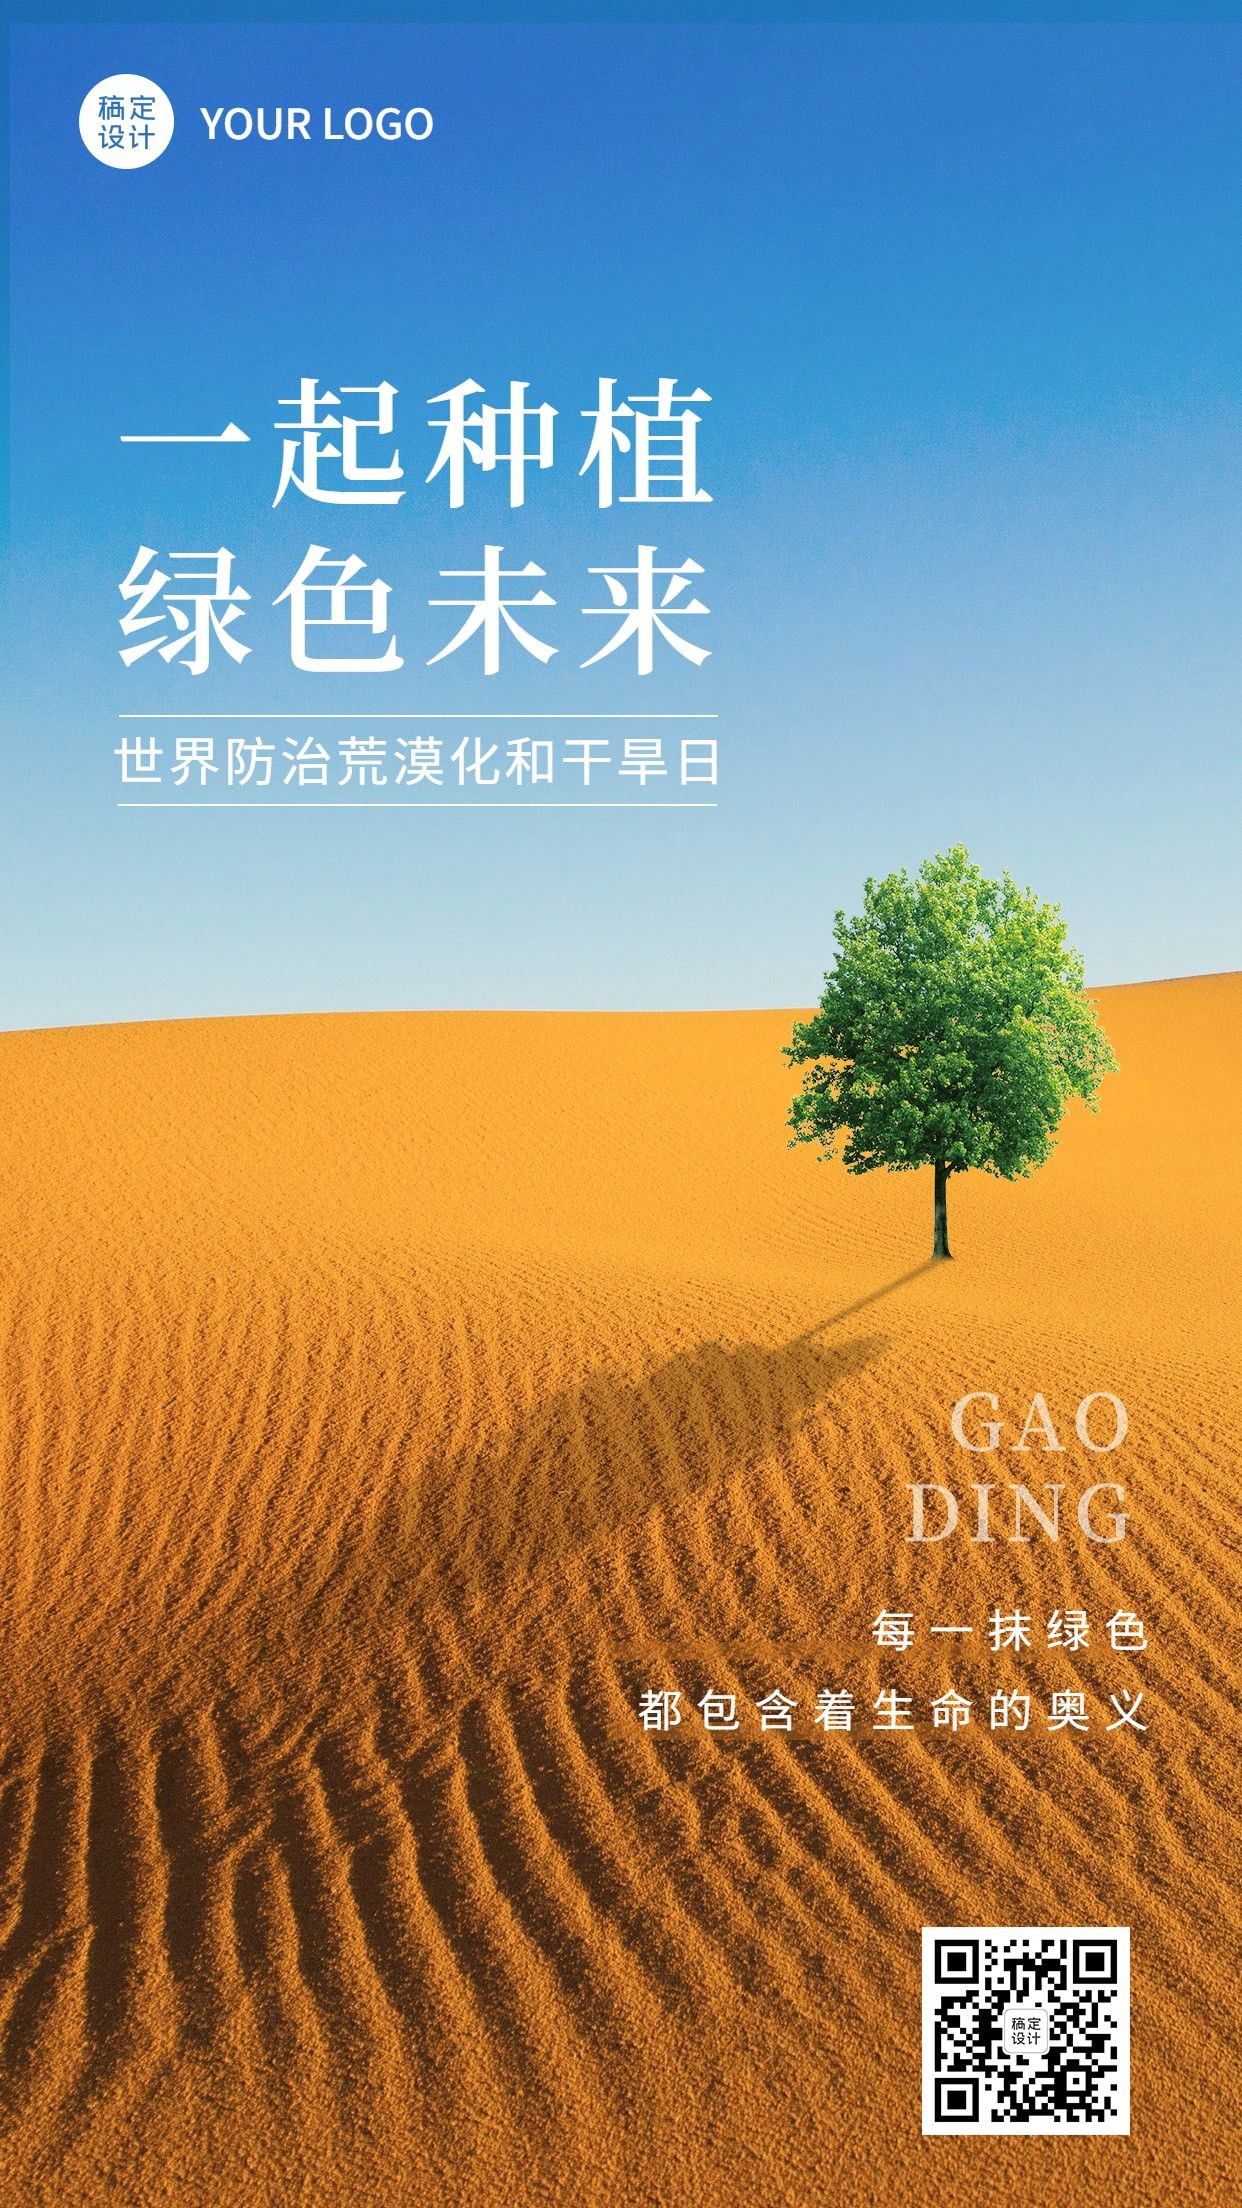 世界防治荒漠化和干旱日手机海报预览效果